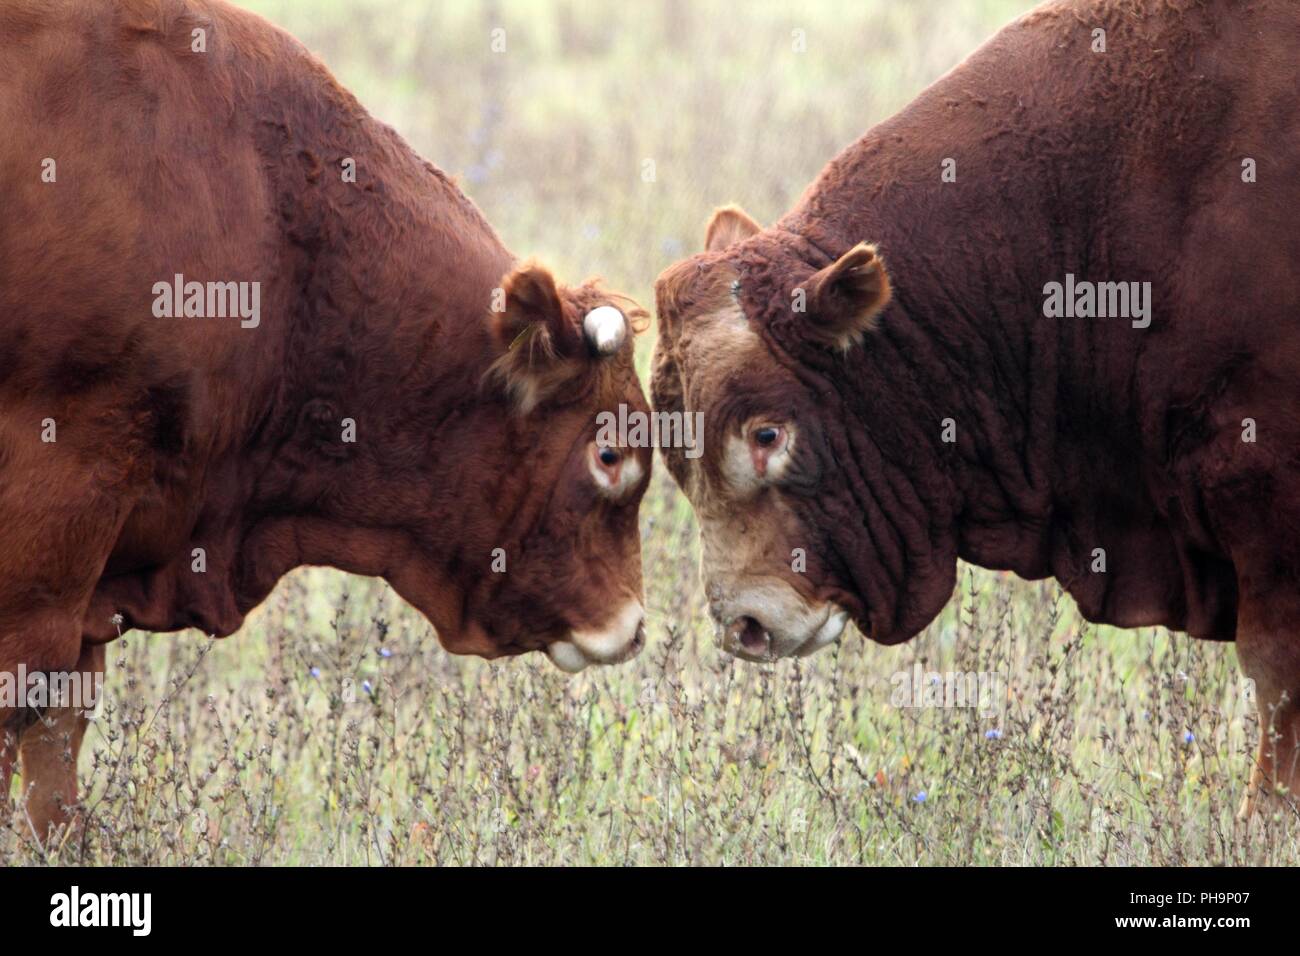 Los jefes de dos toros de pastizales. Foto de stock